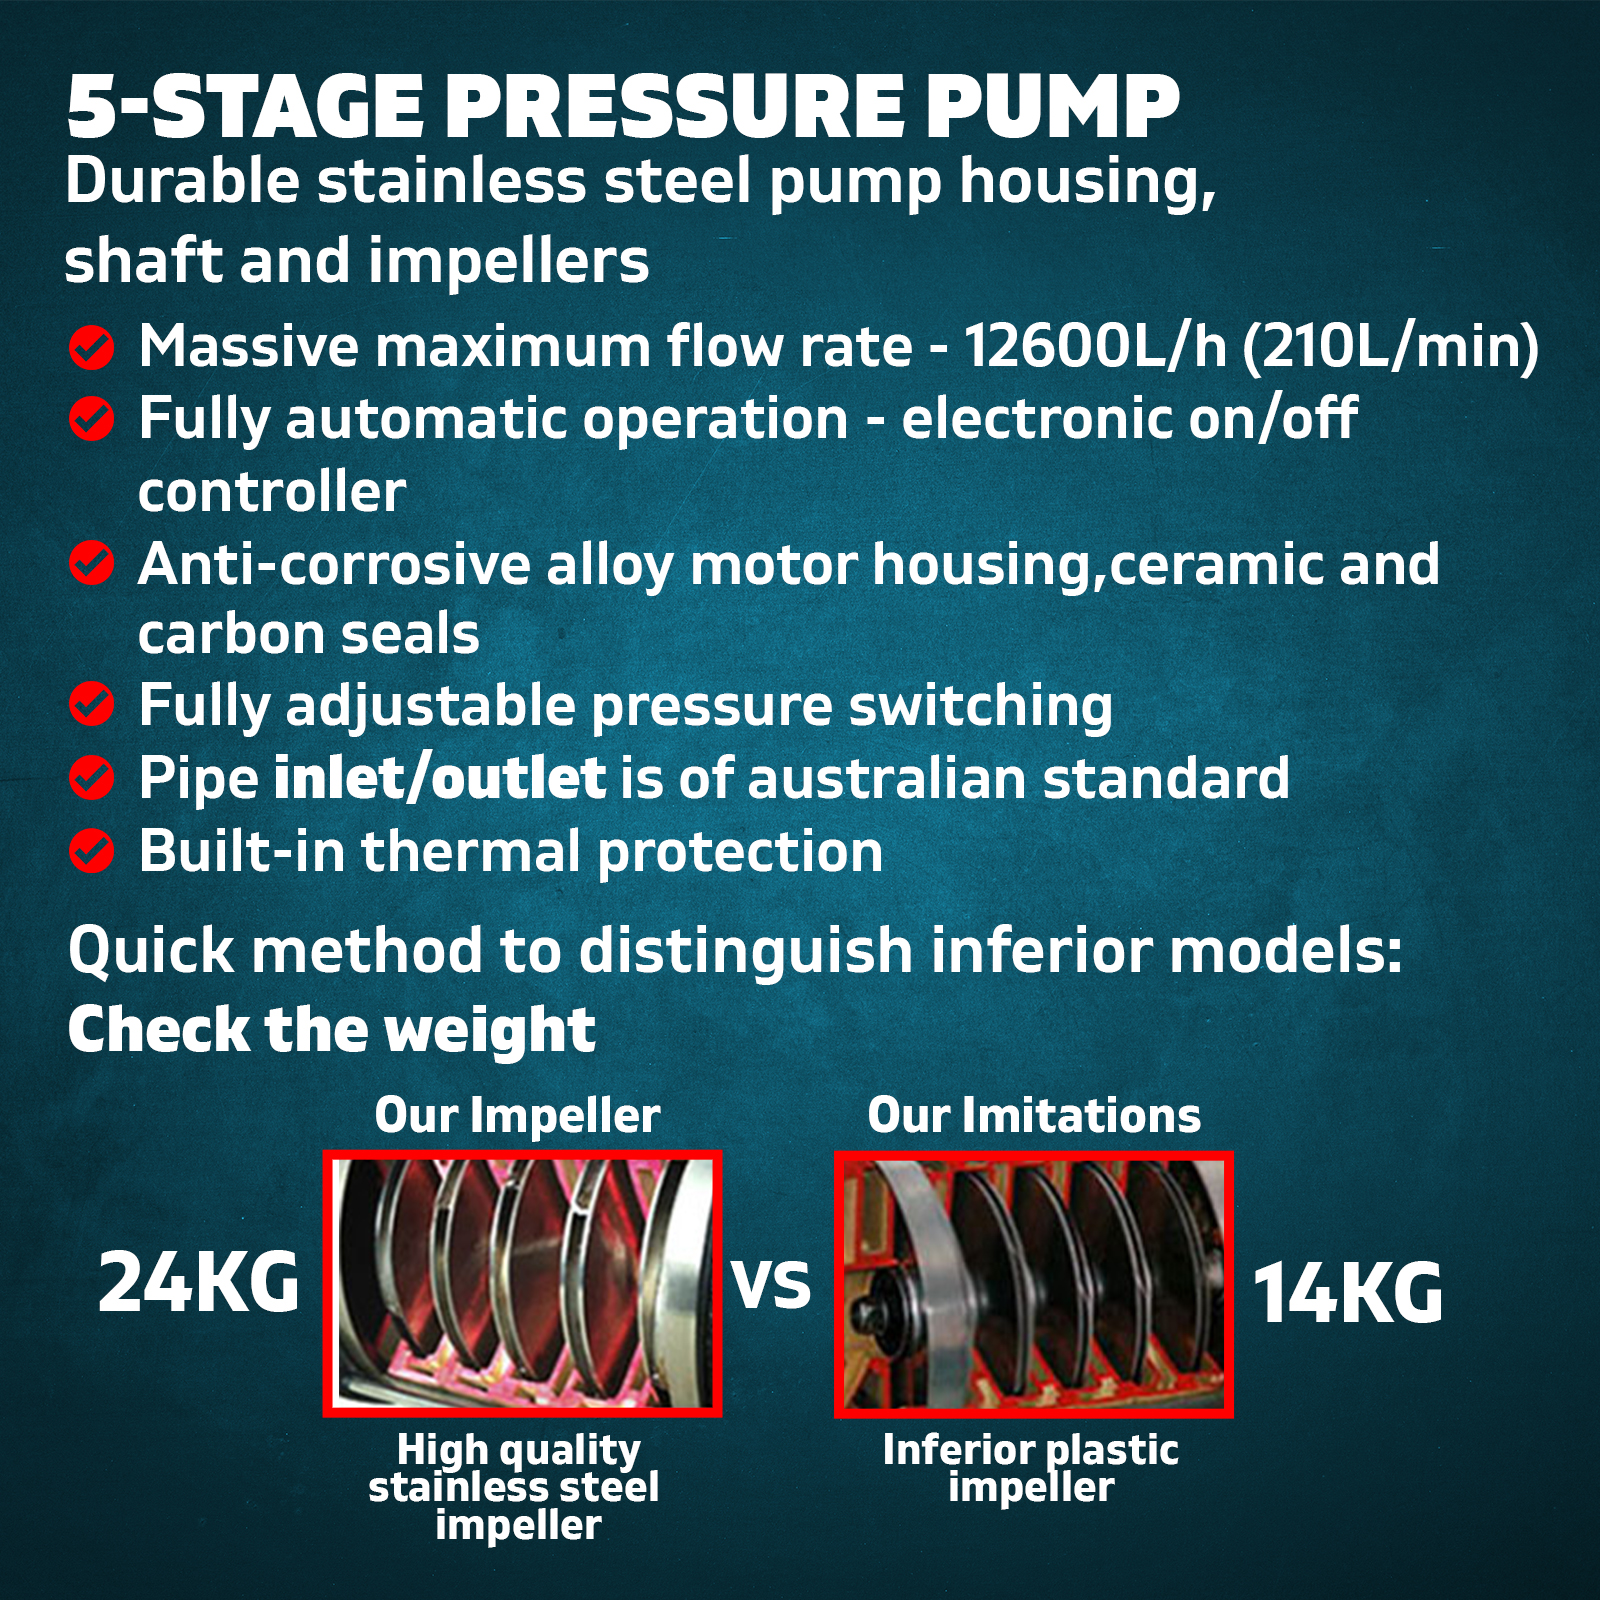 1800W Water Pressure Pump Multi Stage Auto House Garden Rain Tank Irrigation